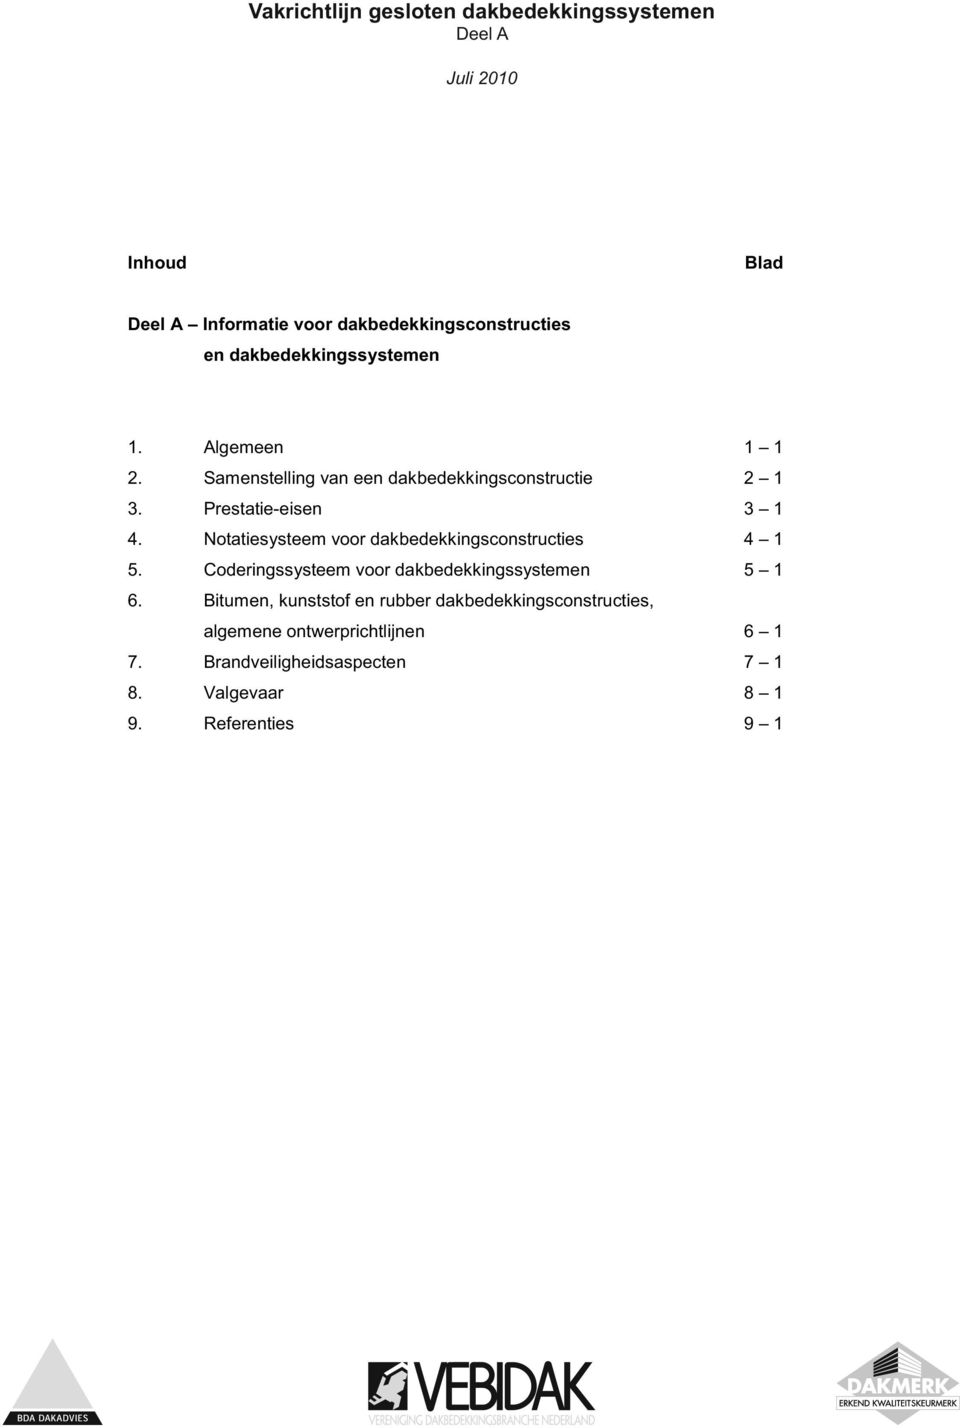 Notatiesysteem voor dakbedekkingsconstructies 4 1 5. Coderingssysteem voor dakbedekkingssystemen 5 1 6.